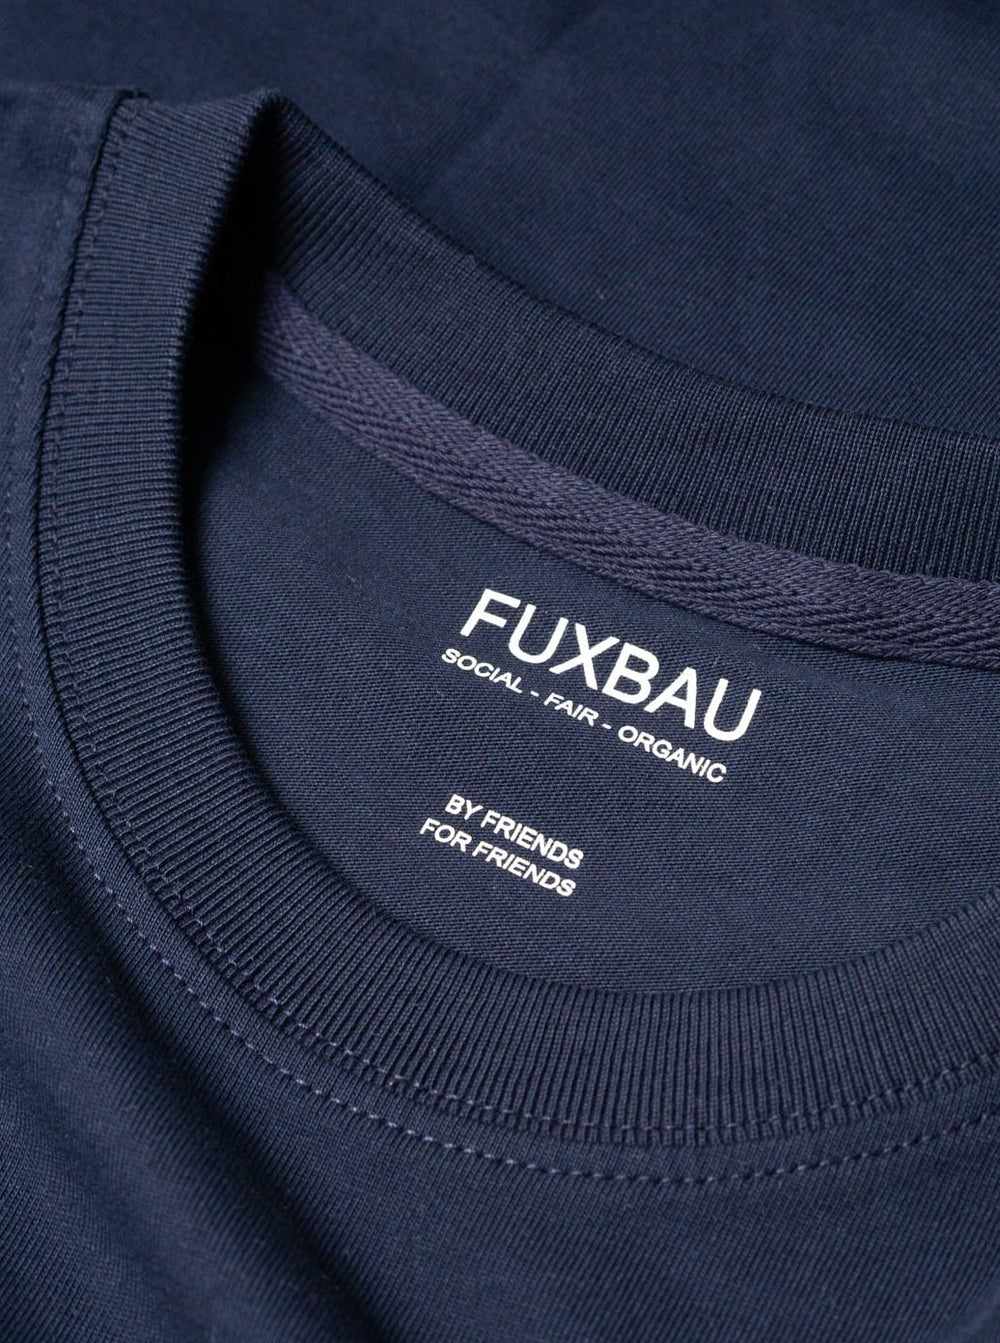 qualitiativ hochwertig, preiswert und nachhaltiges Basic T-Shirt im 3er Pack in navy von FUXBAU.